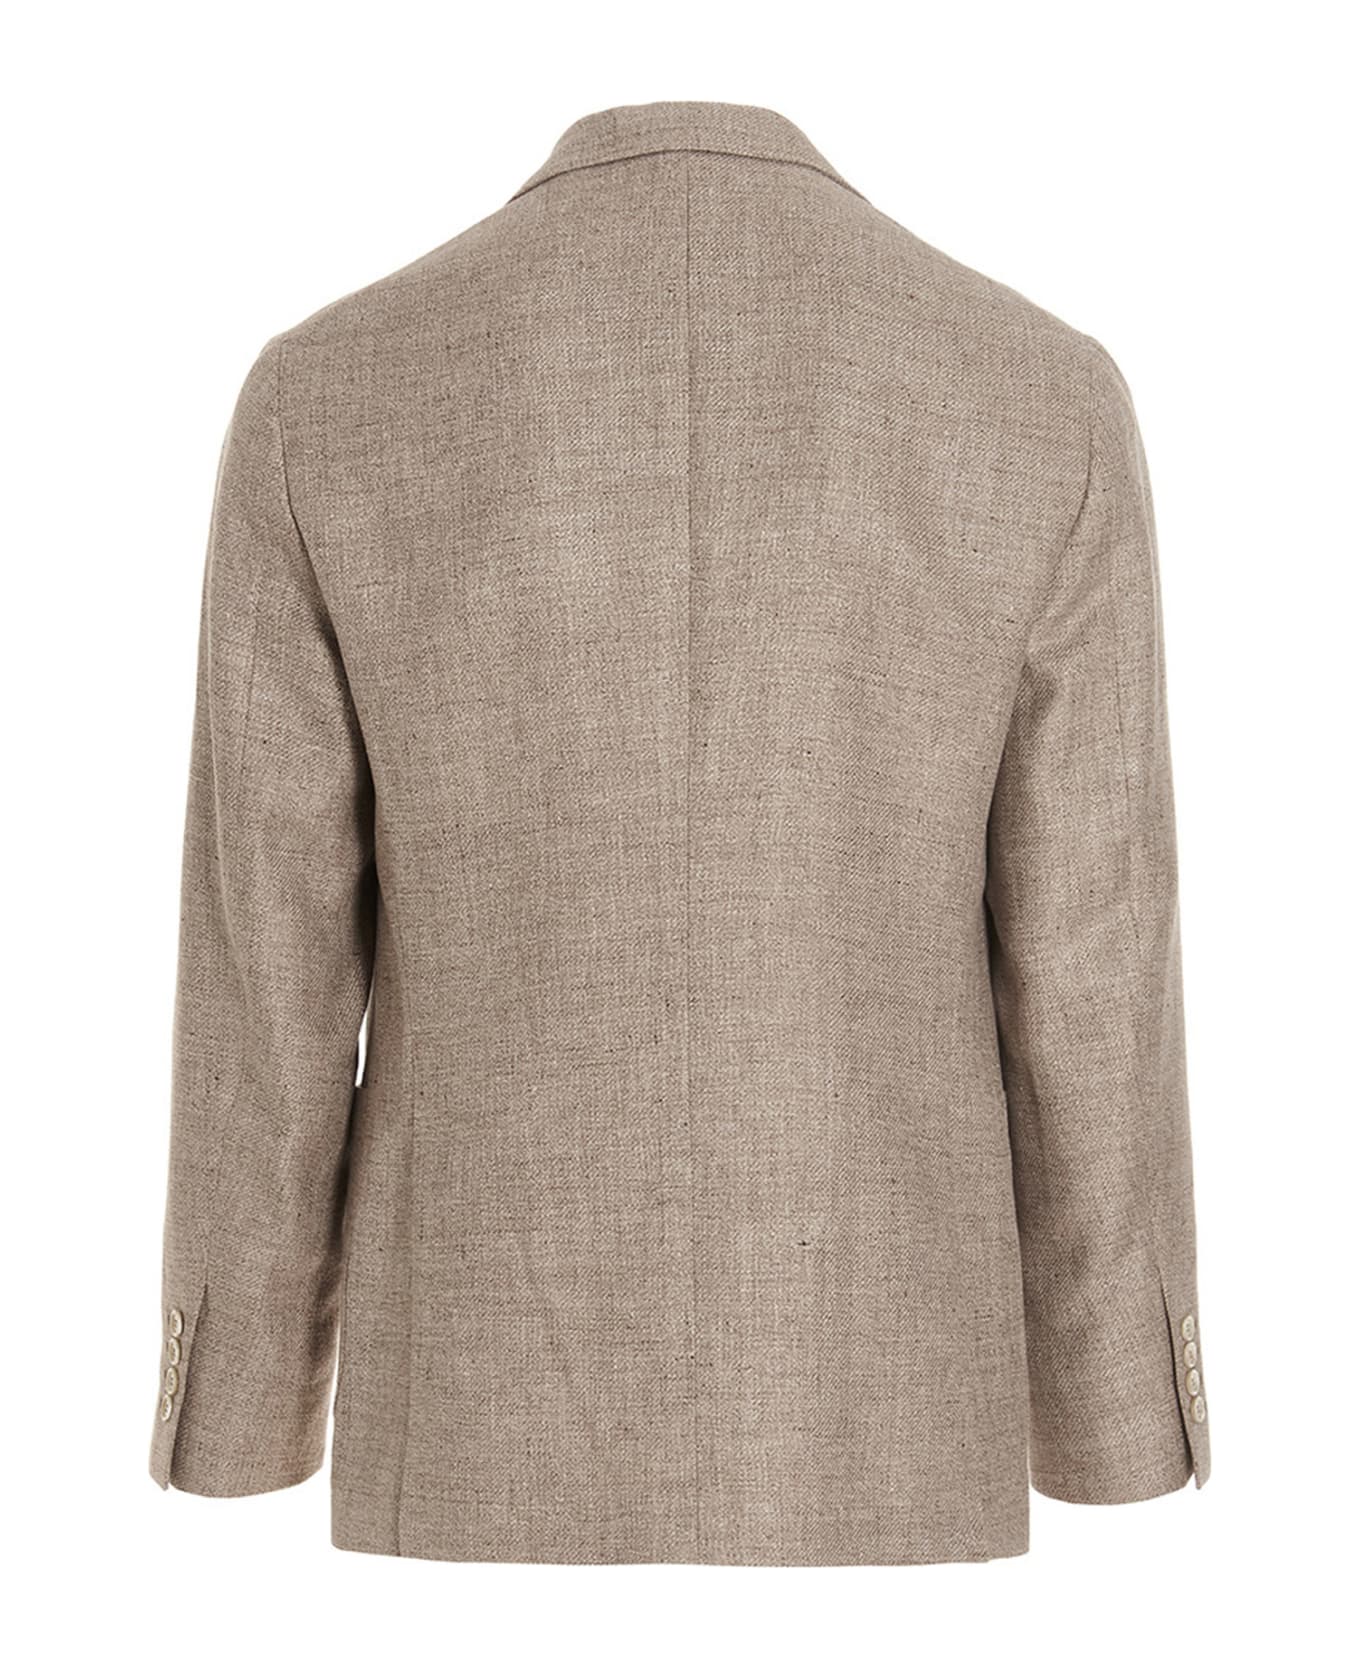 Brunello Cucinelli Single Breast Blazer Jacket - Beige